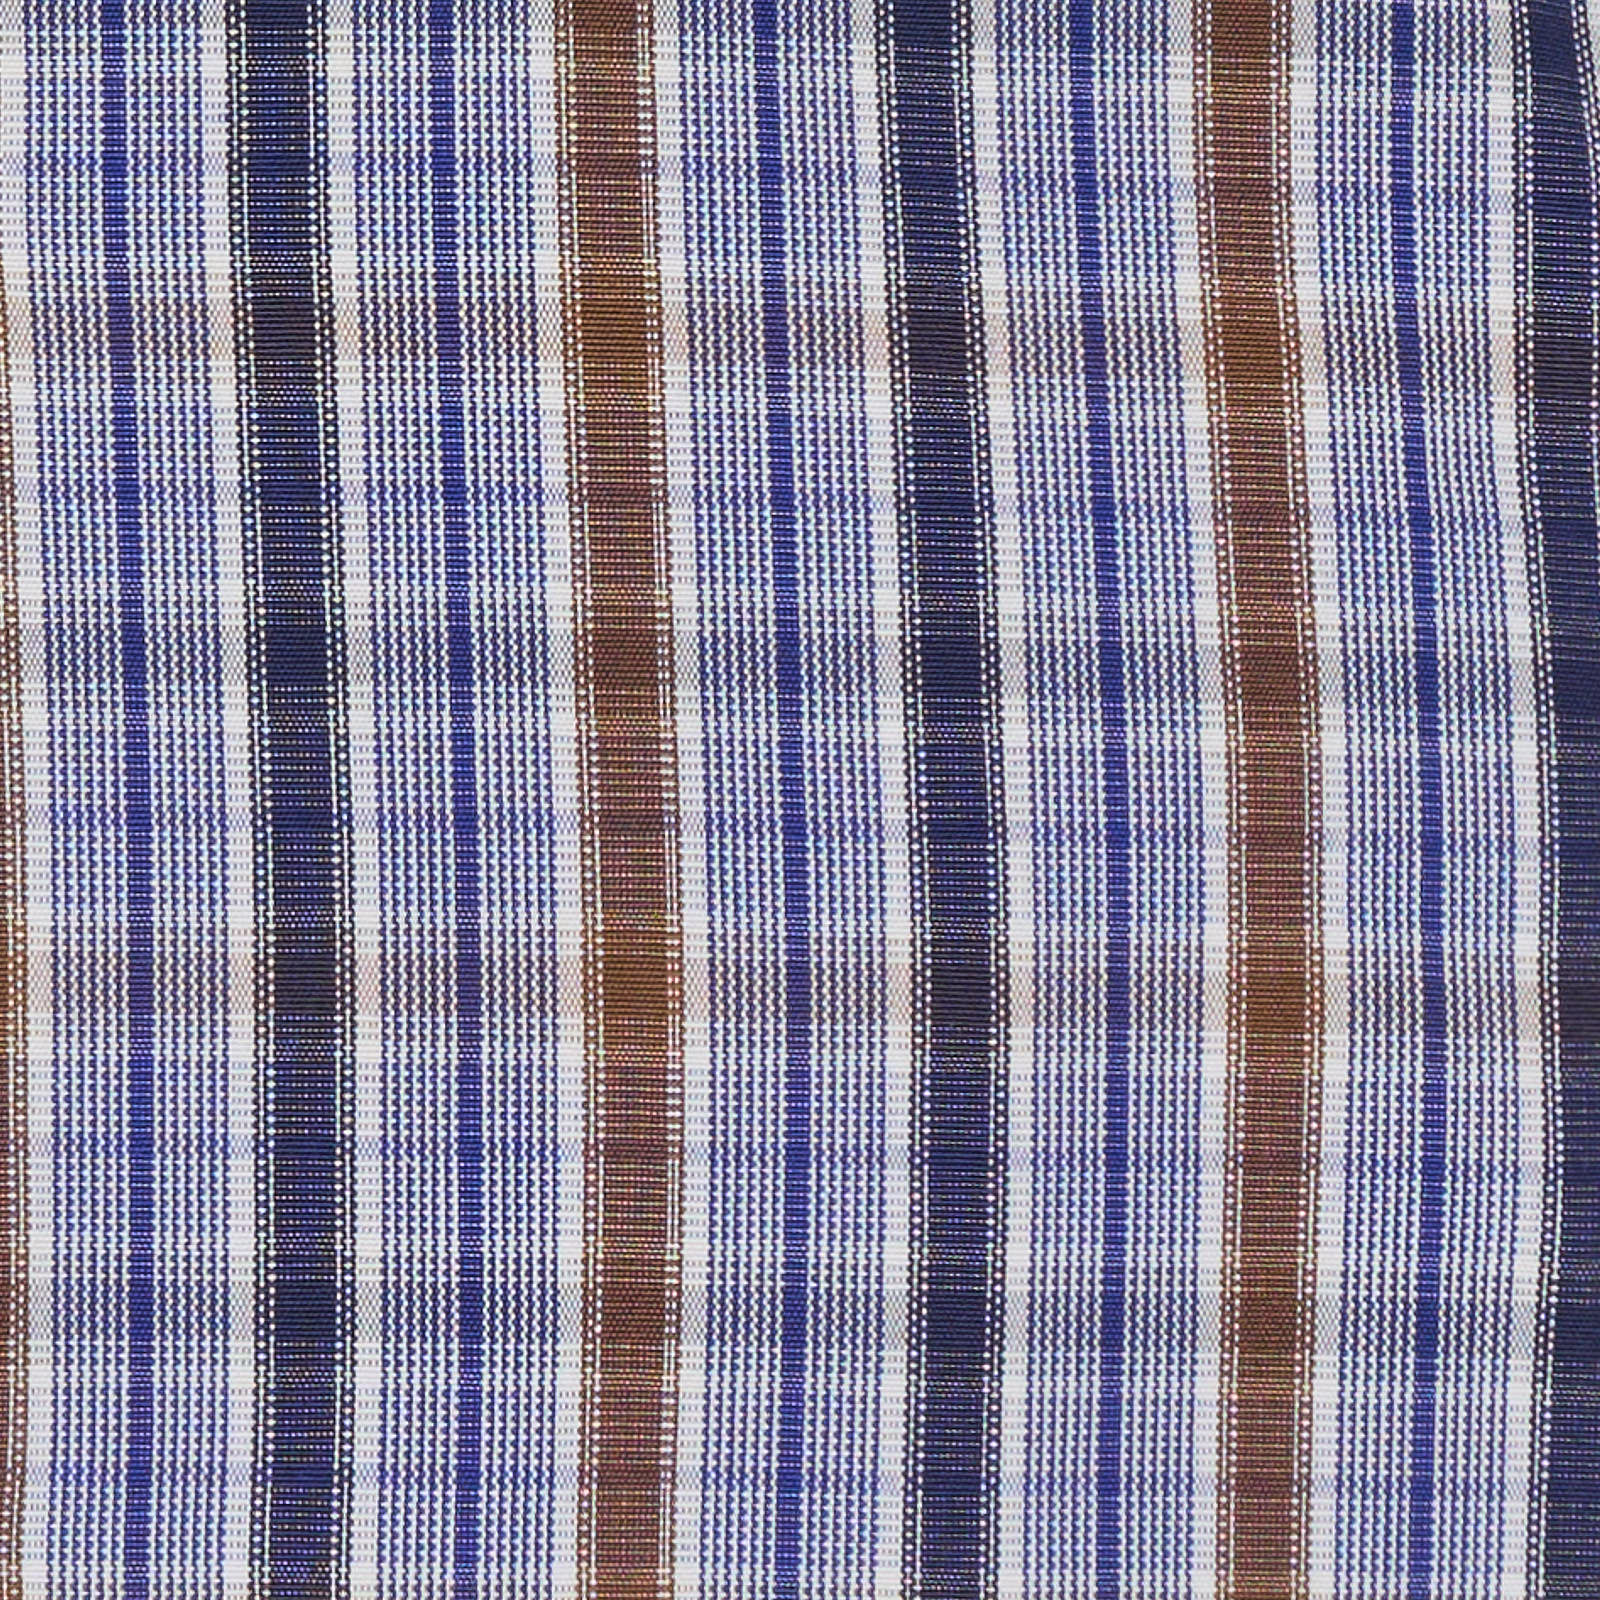 MATTABISCH for VANNUCCI Multicolor Cotton Dress Shirt EU 38 NEW US 15